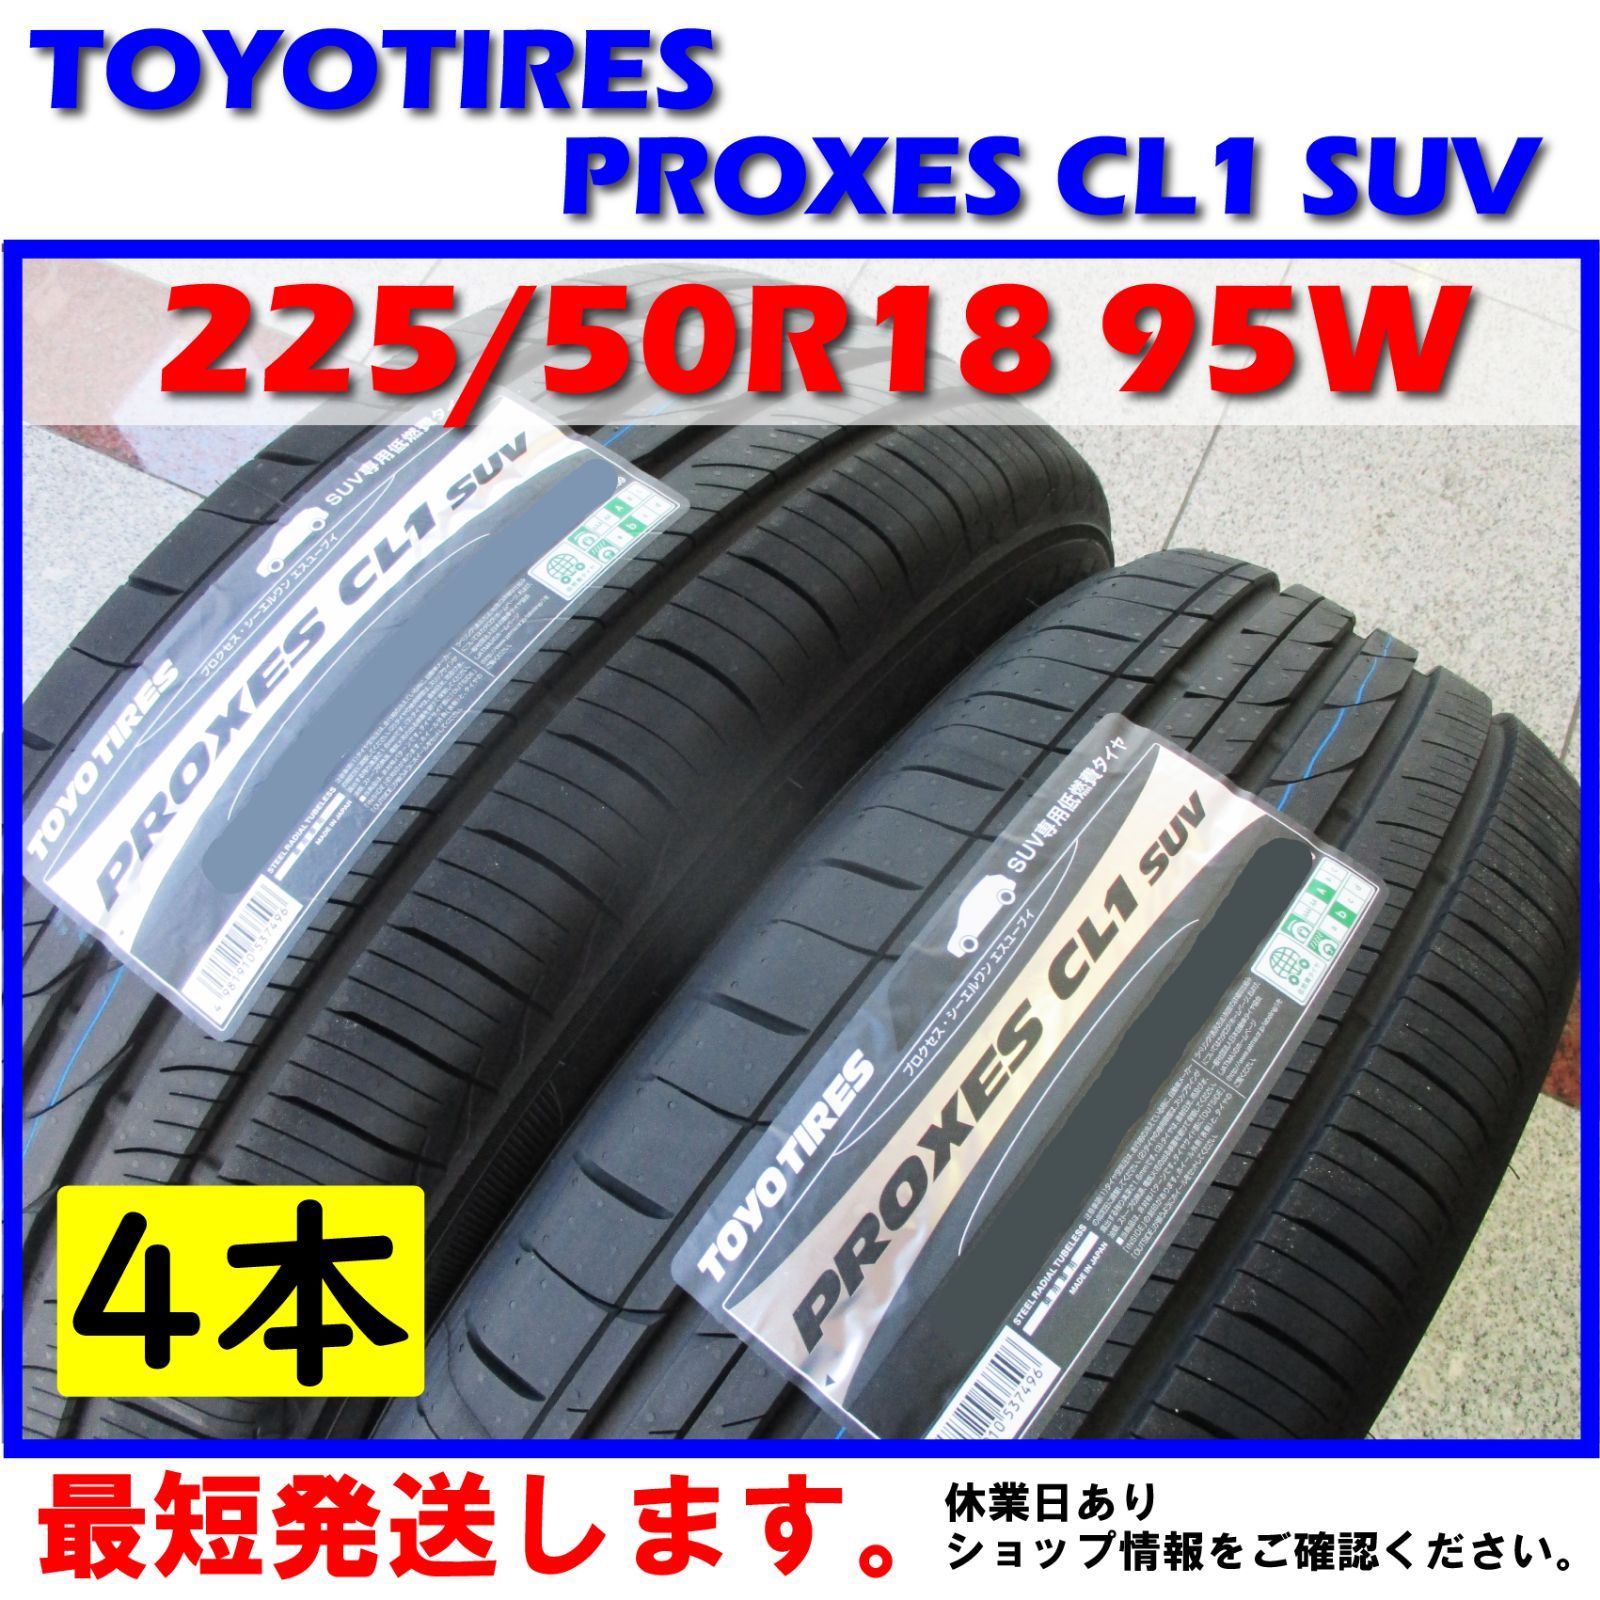 サマータイヤ 4本セット トーヨータイヤ(TOYO TIRES) PROXES CL1 SUV 225/55R18 98V